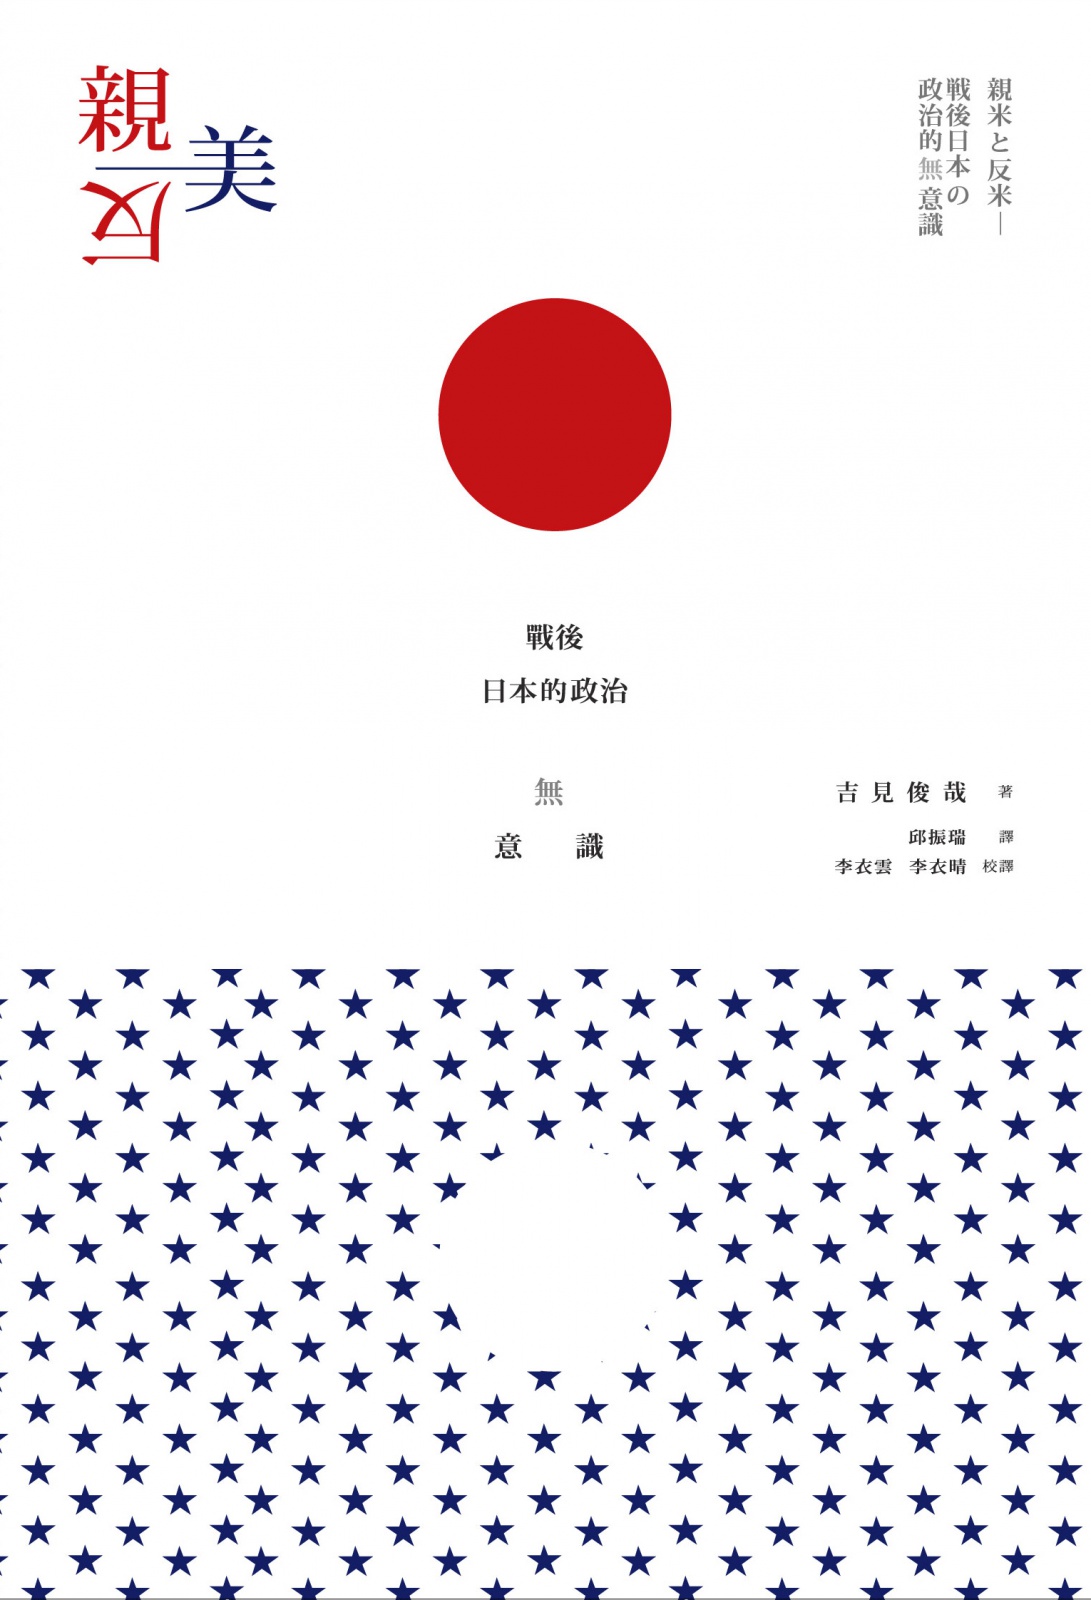 親美與反美：戰後日本的政治無意識| 獨立出版聯盟網站